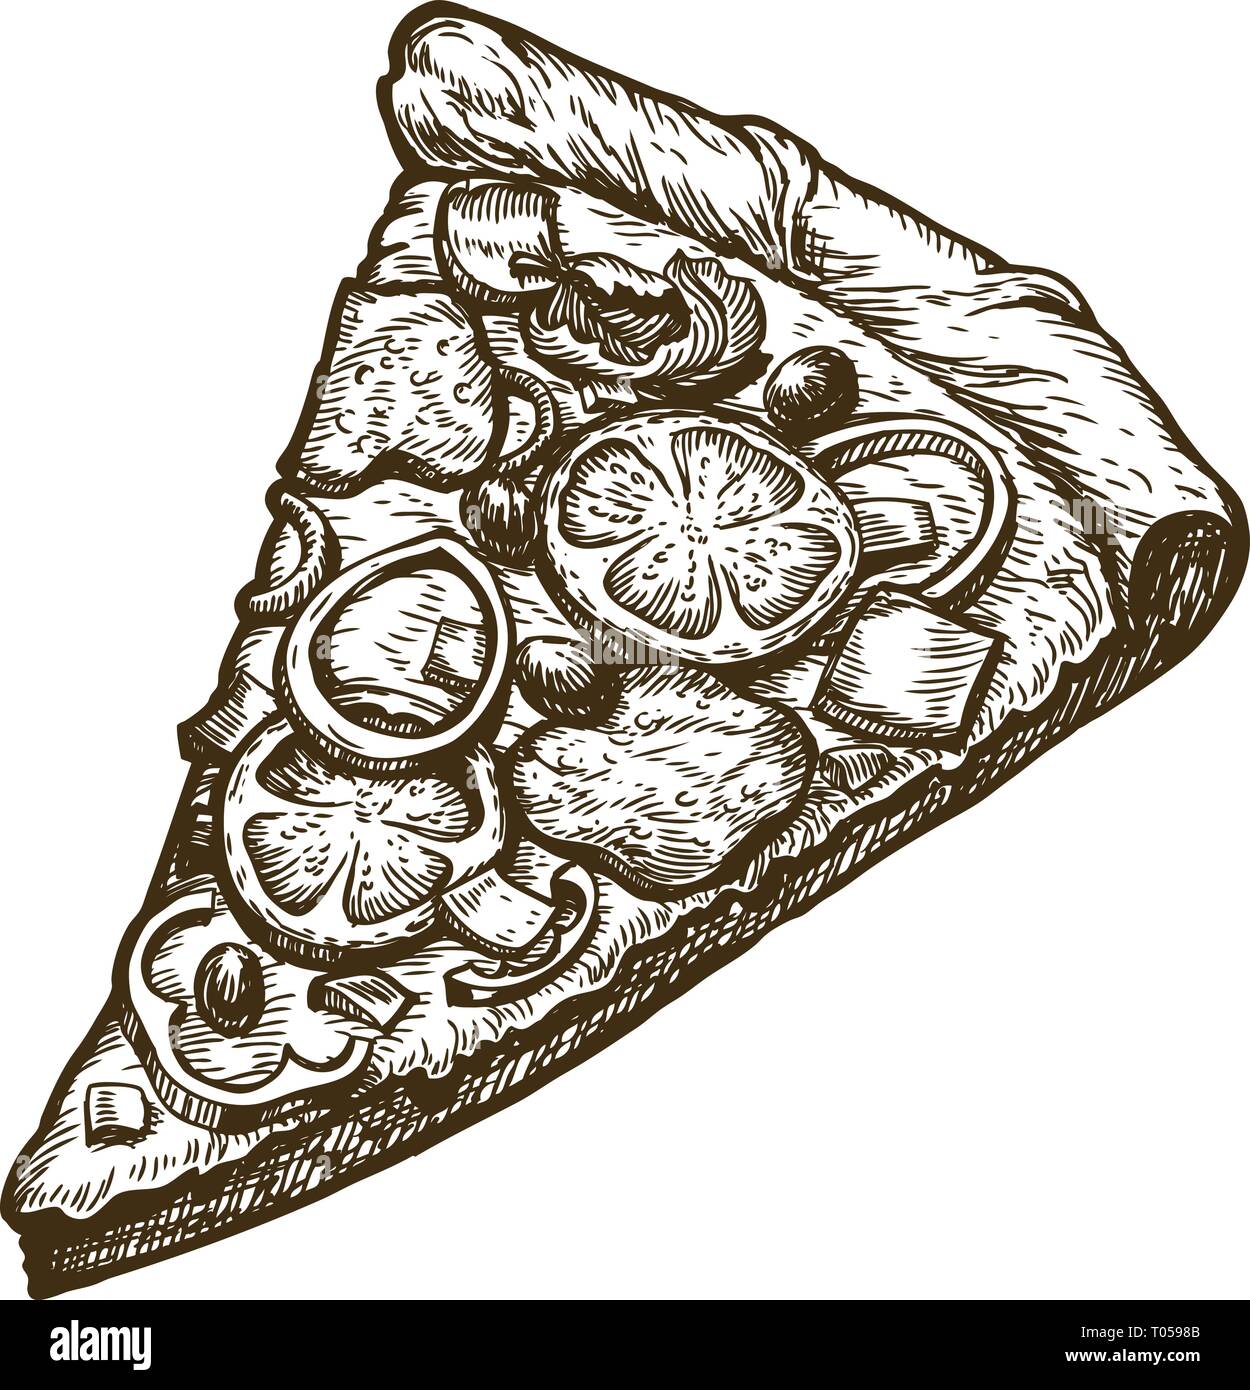 Disegnata a mano un trancio di pizza. Cibo, menu italiano. Schizzo illustrazione vettoriale Illustrazione Vettoriale